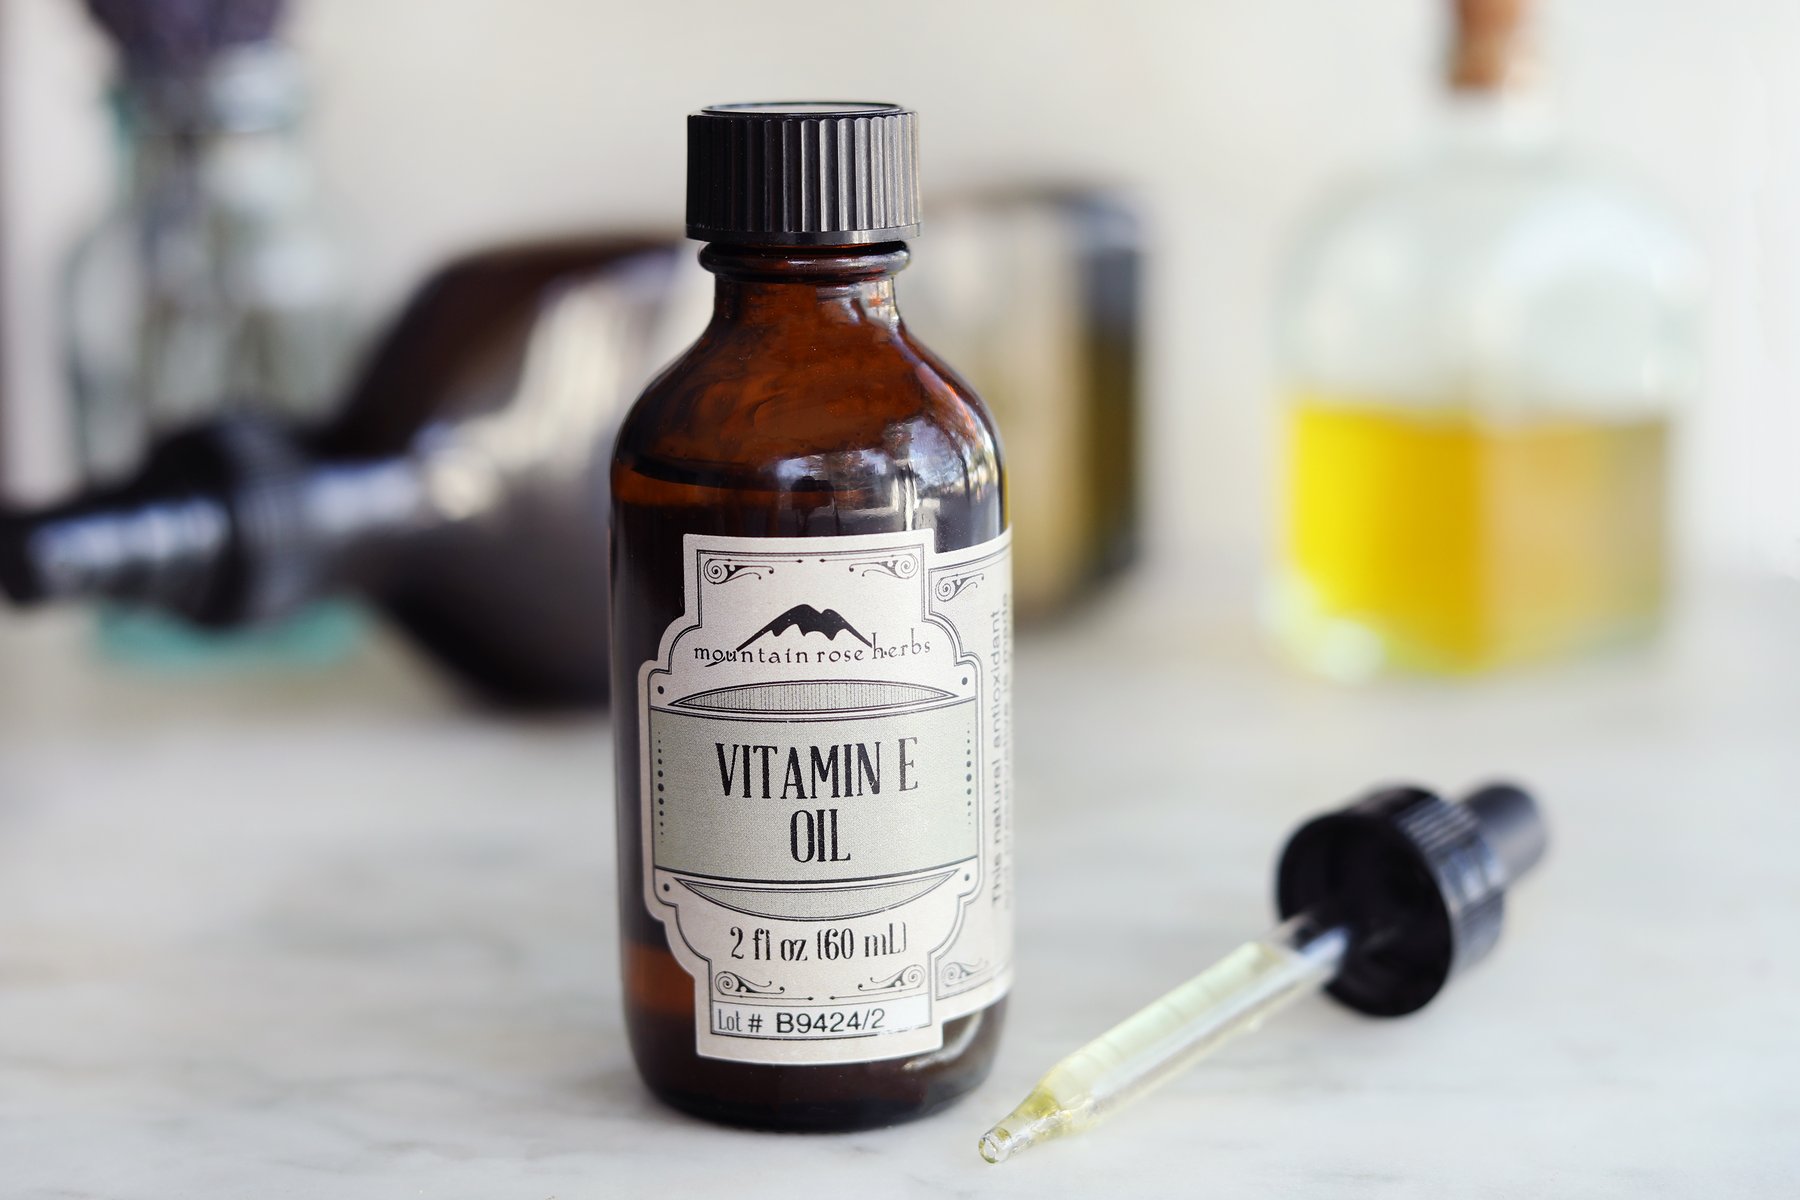 Bottiglia di olio di vitamina E con un contagocce e altri ingredienti fai da te sullo sfondo.